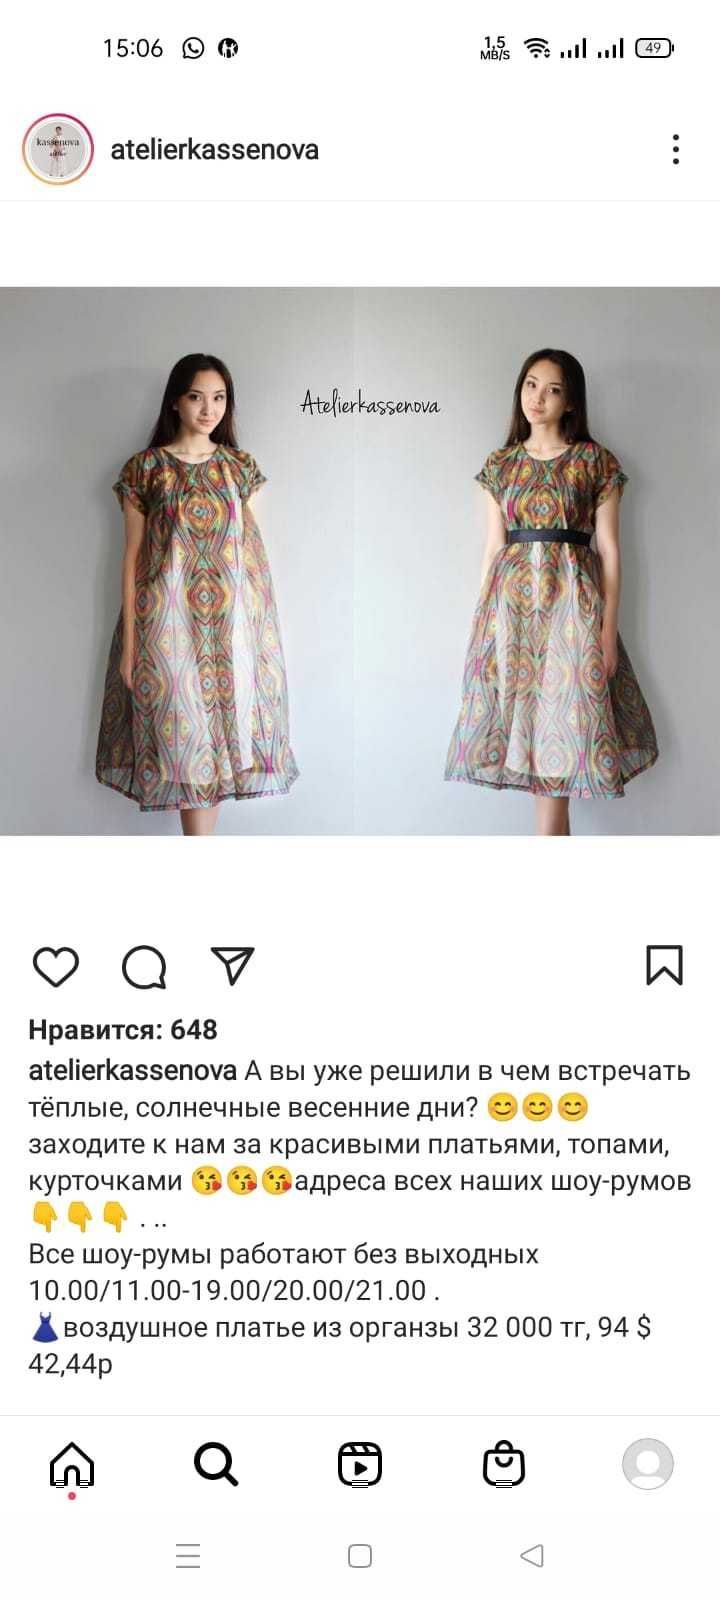 Продается платья